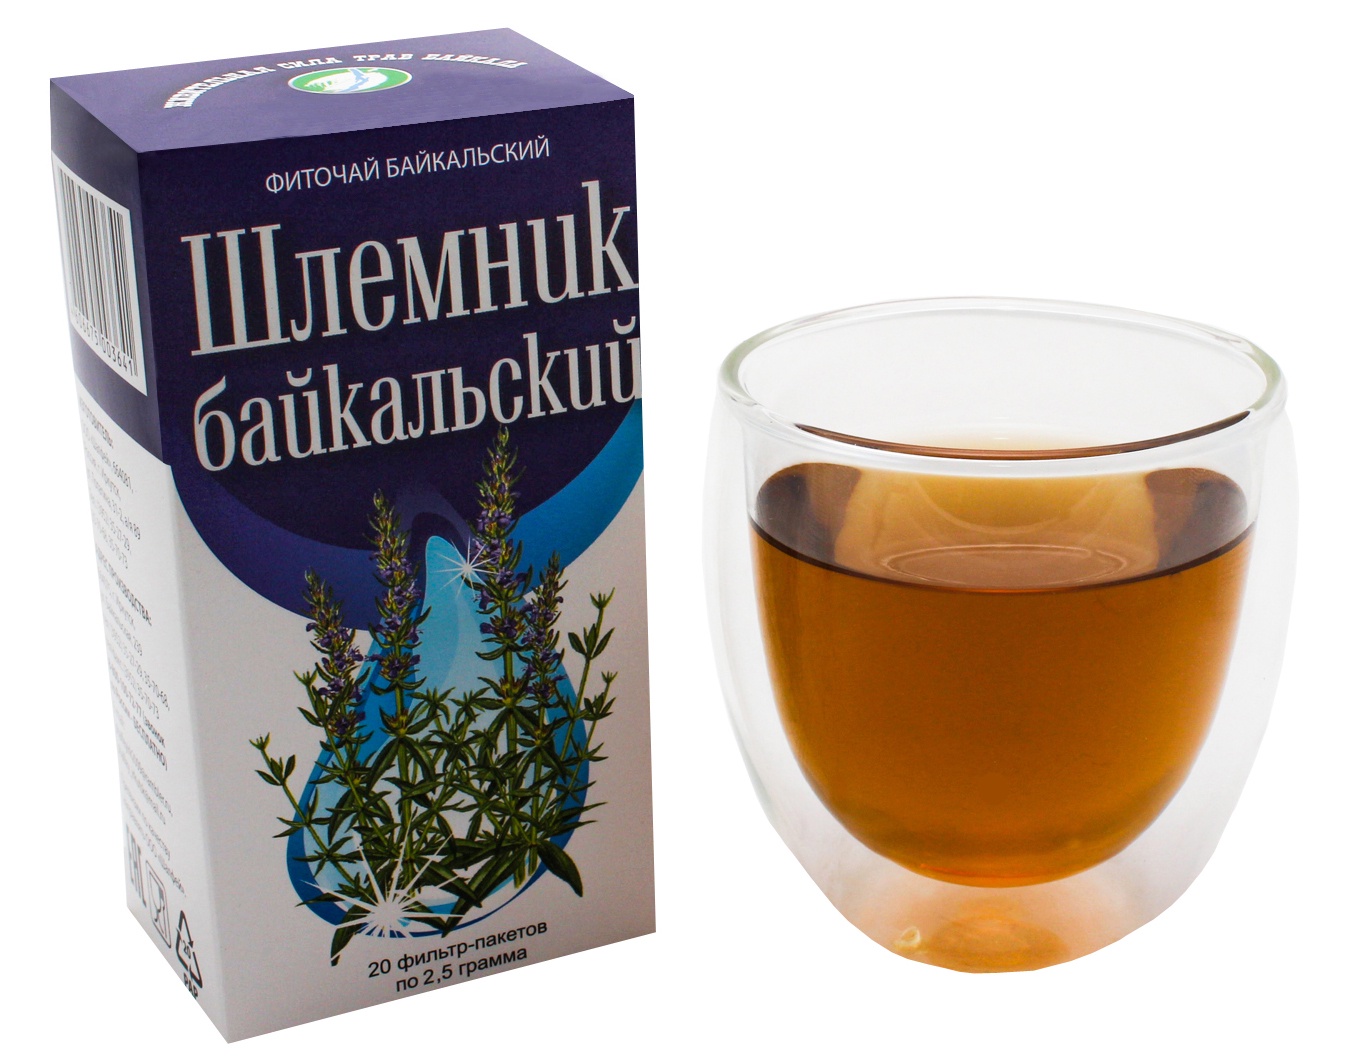 Шлемник Байкальский чай